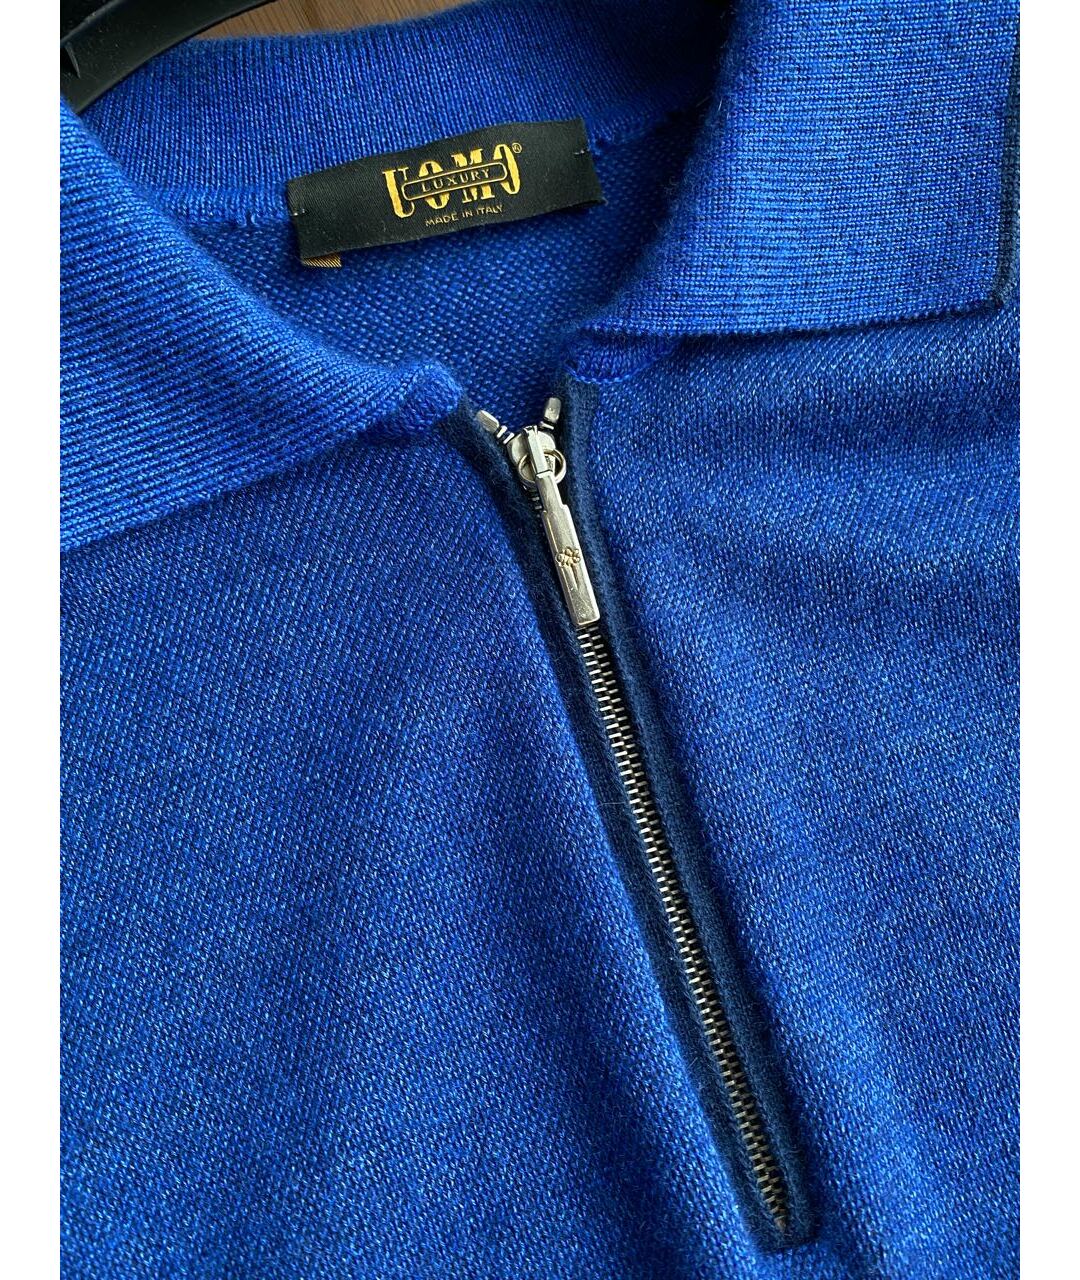 UOMO COLLEZIONI Синий кашемировый джемпер / свитер, фото 4